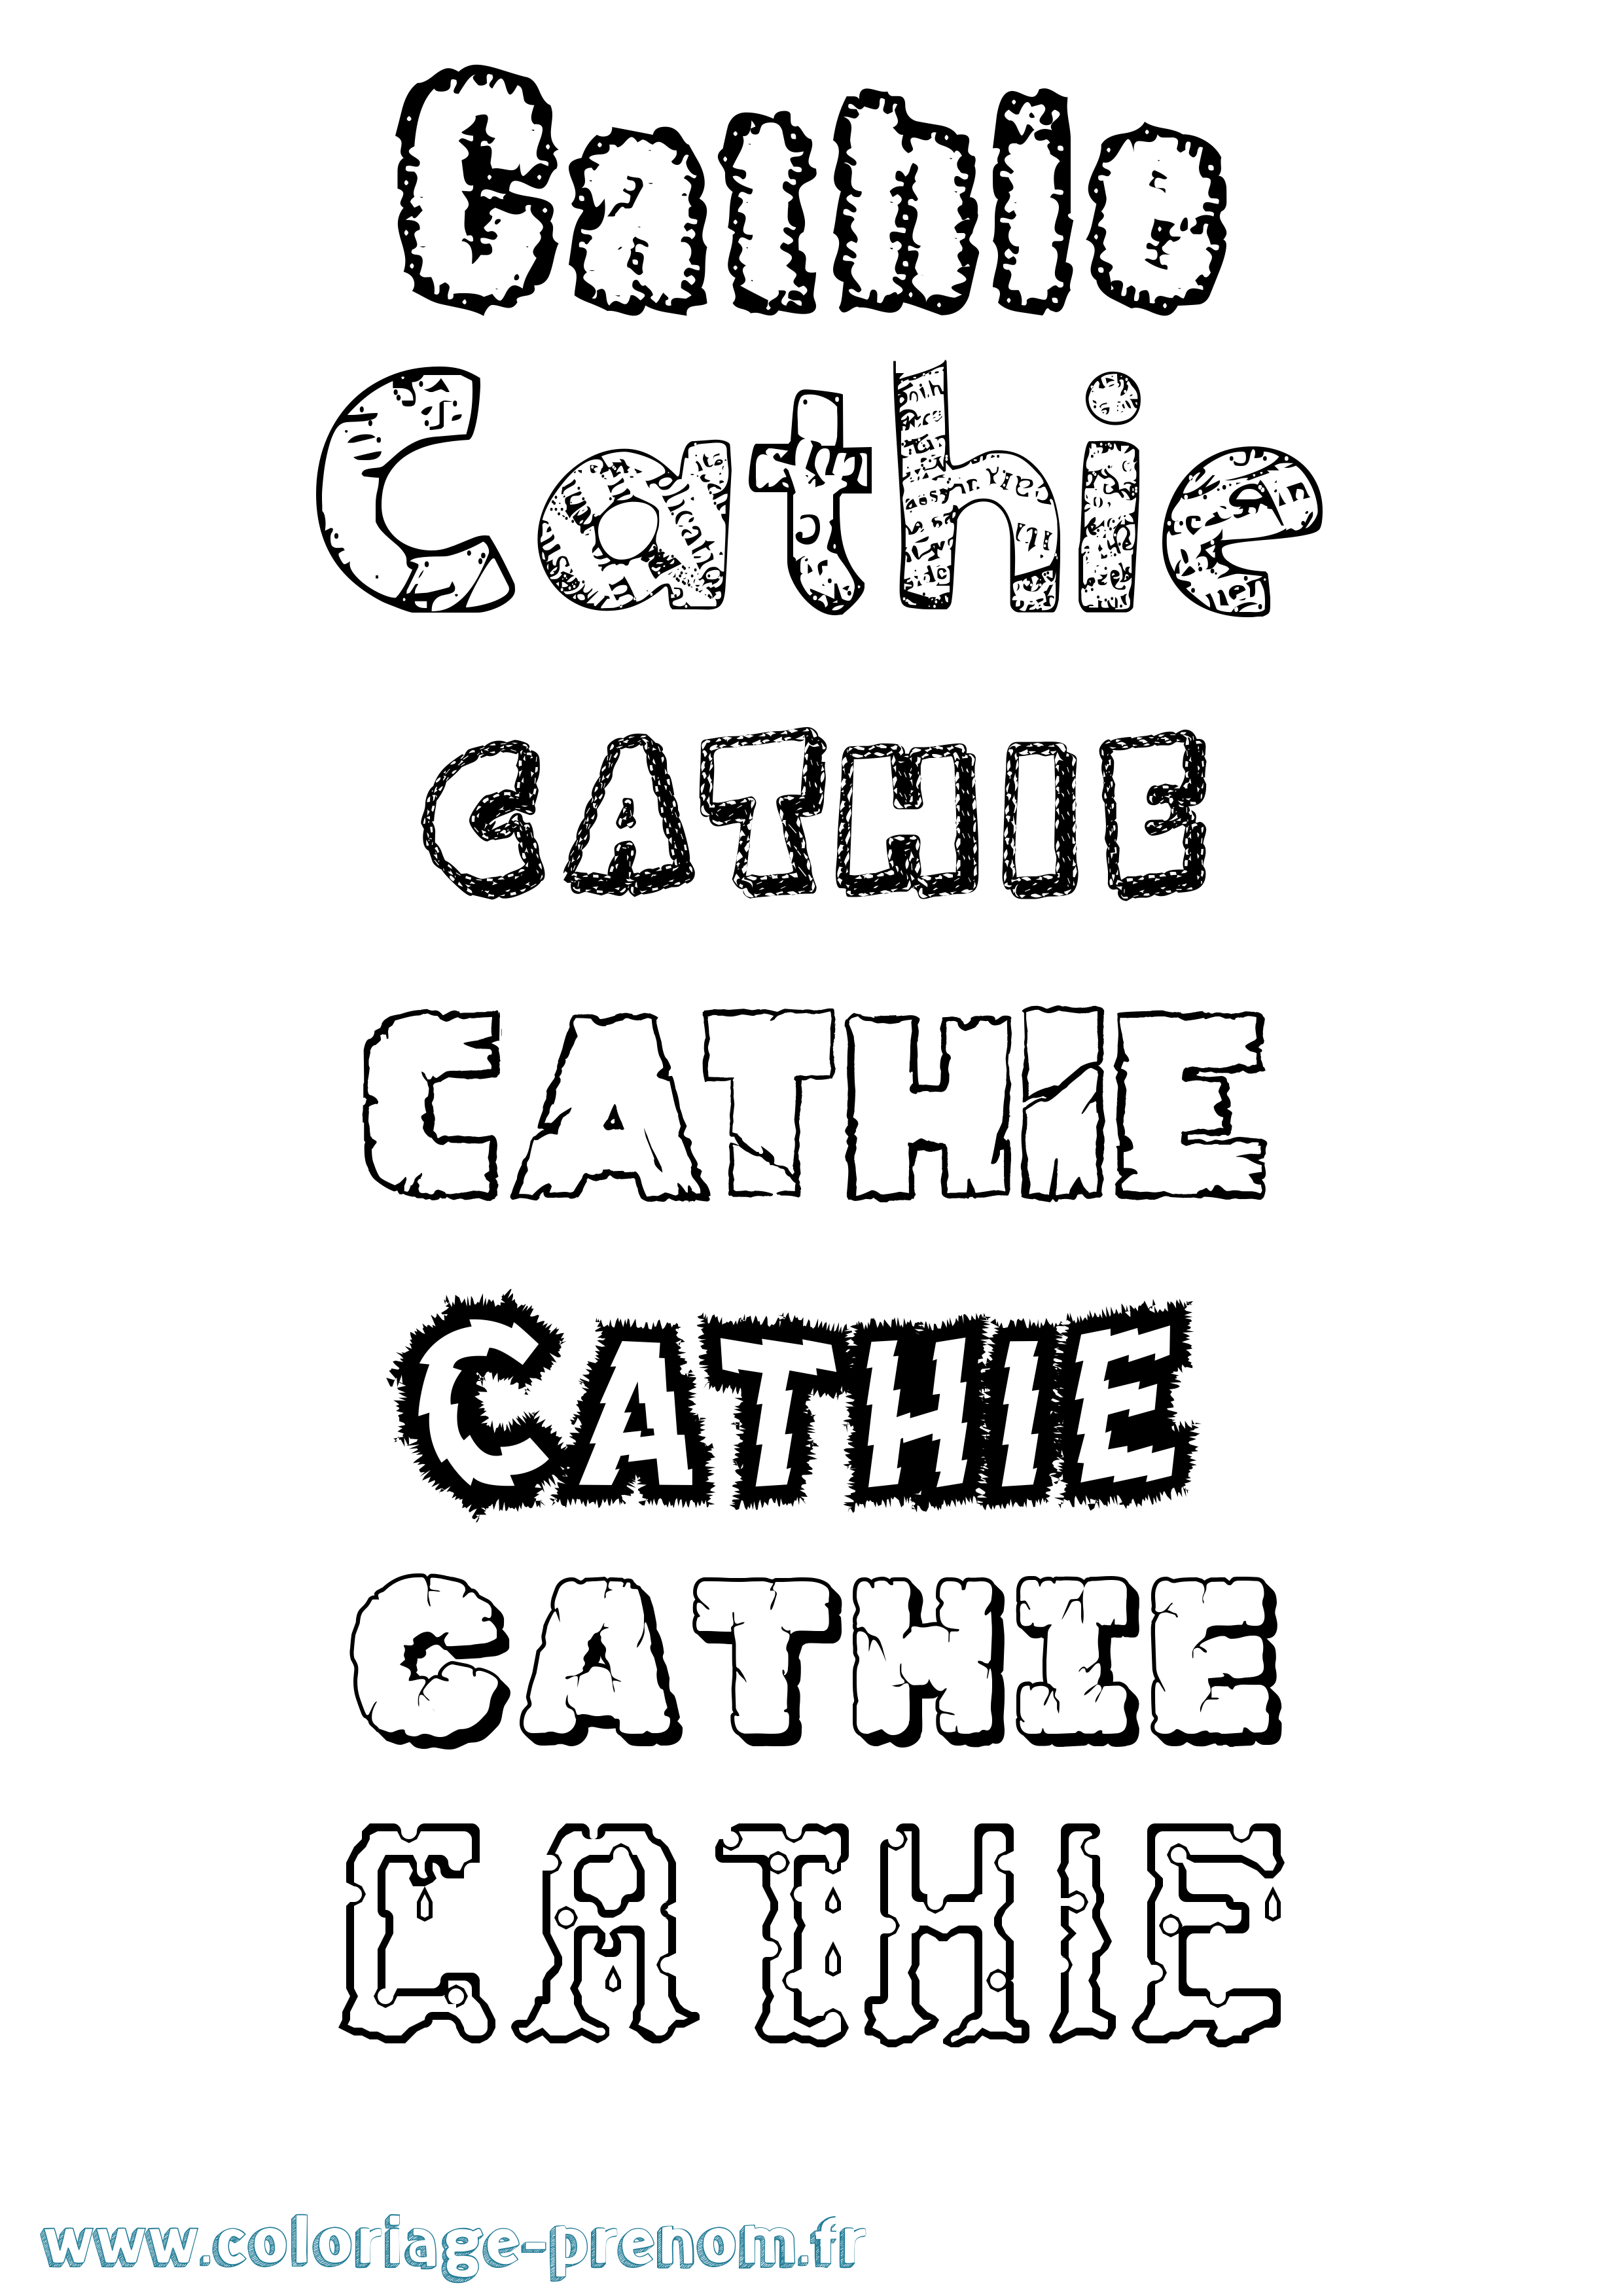 Coloriage prénom Cathie Destructuré